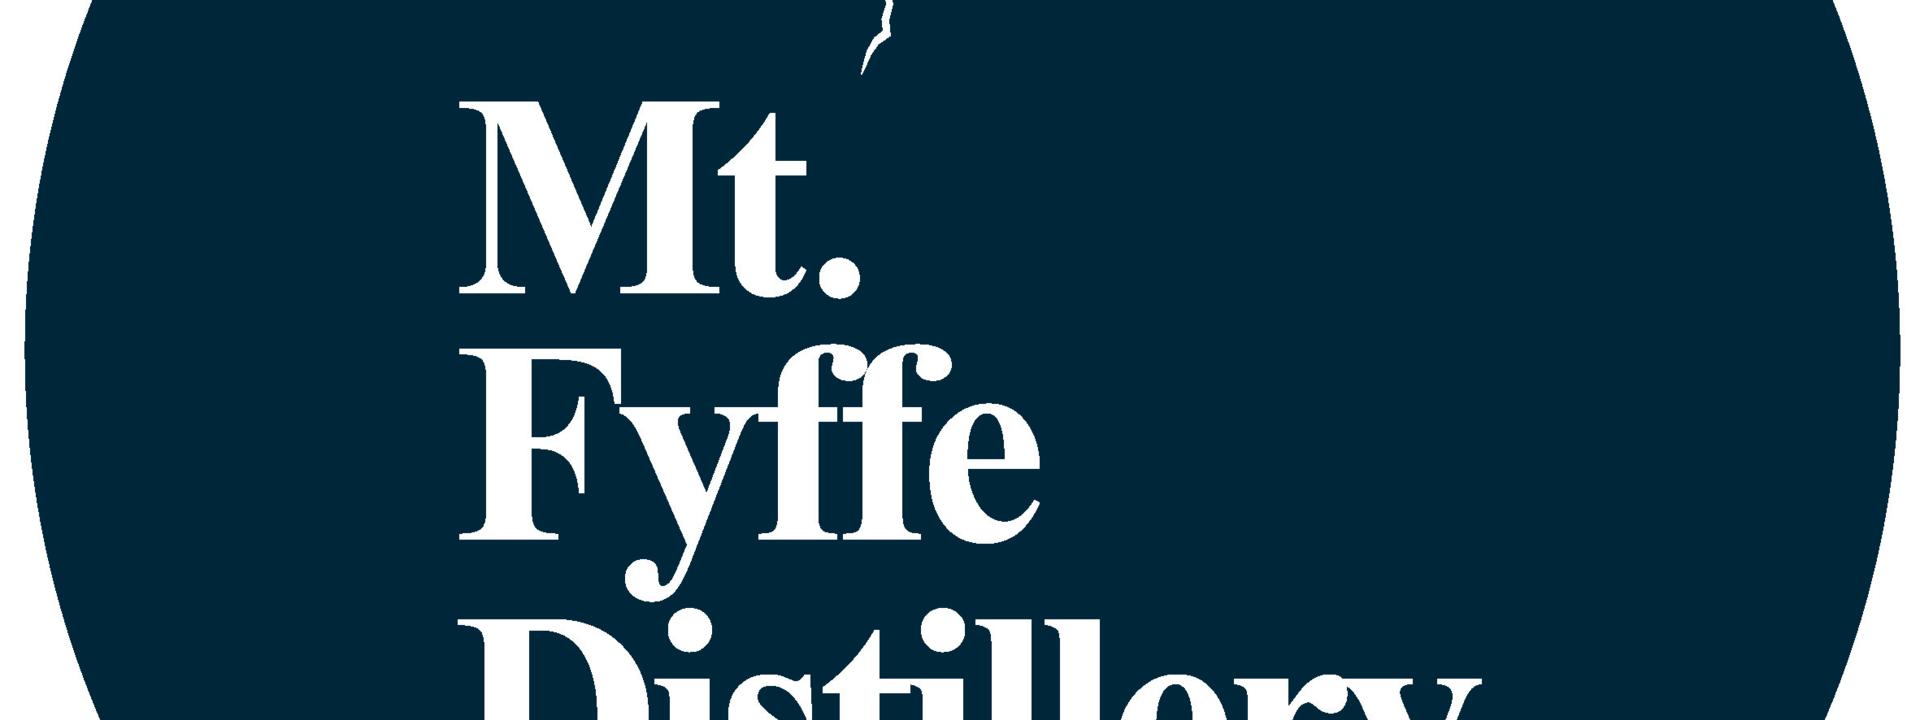 Mt Fyffe Distillery logo4.jpg